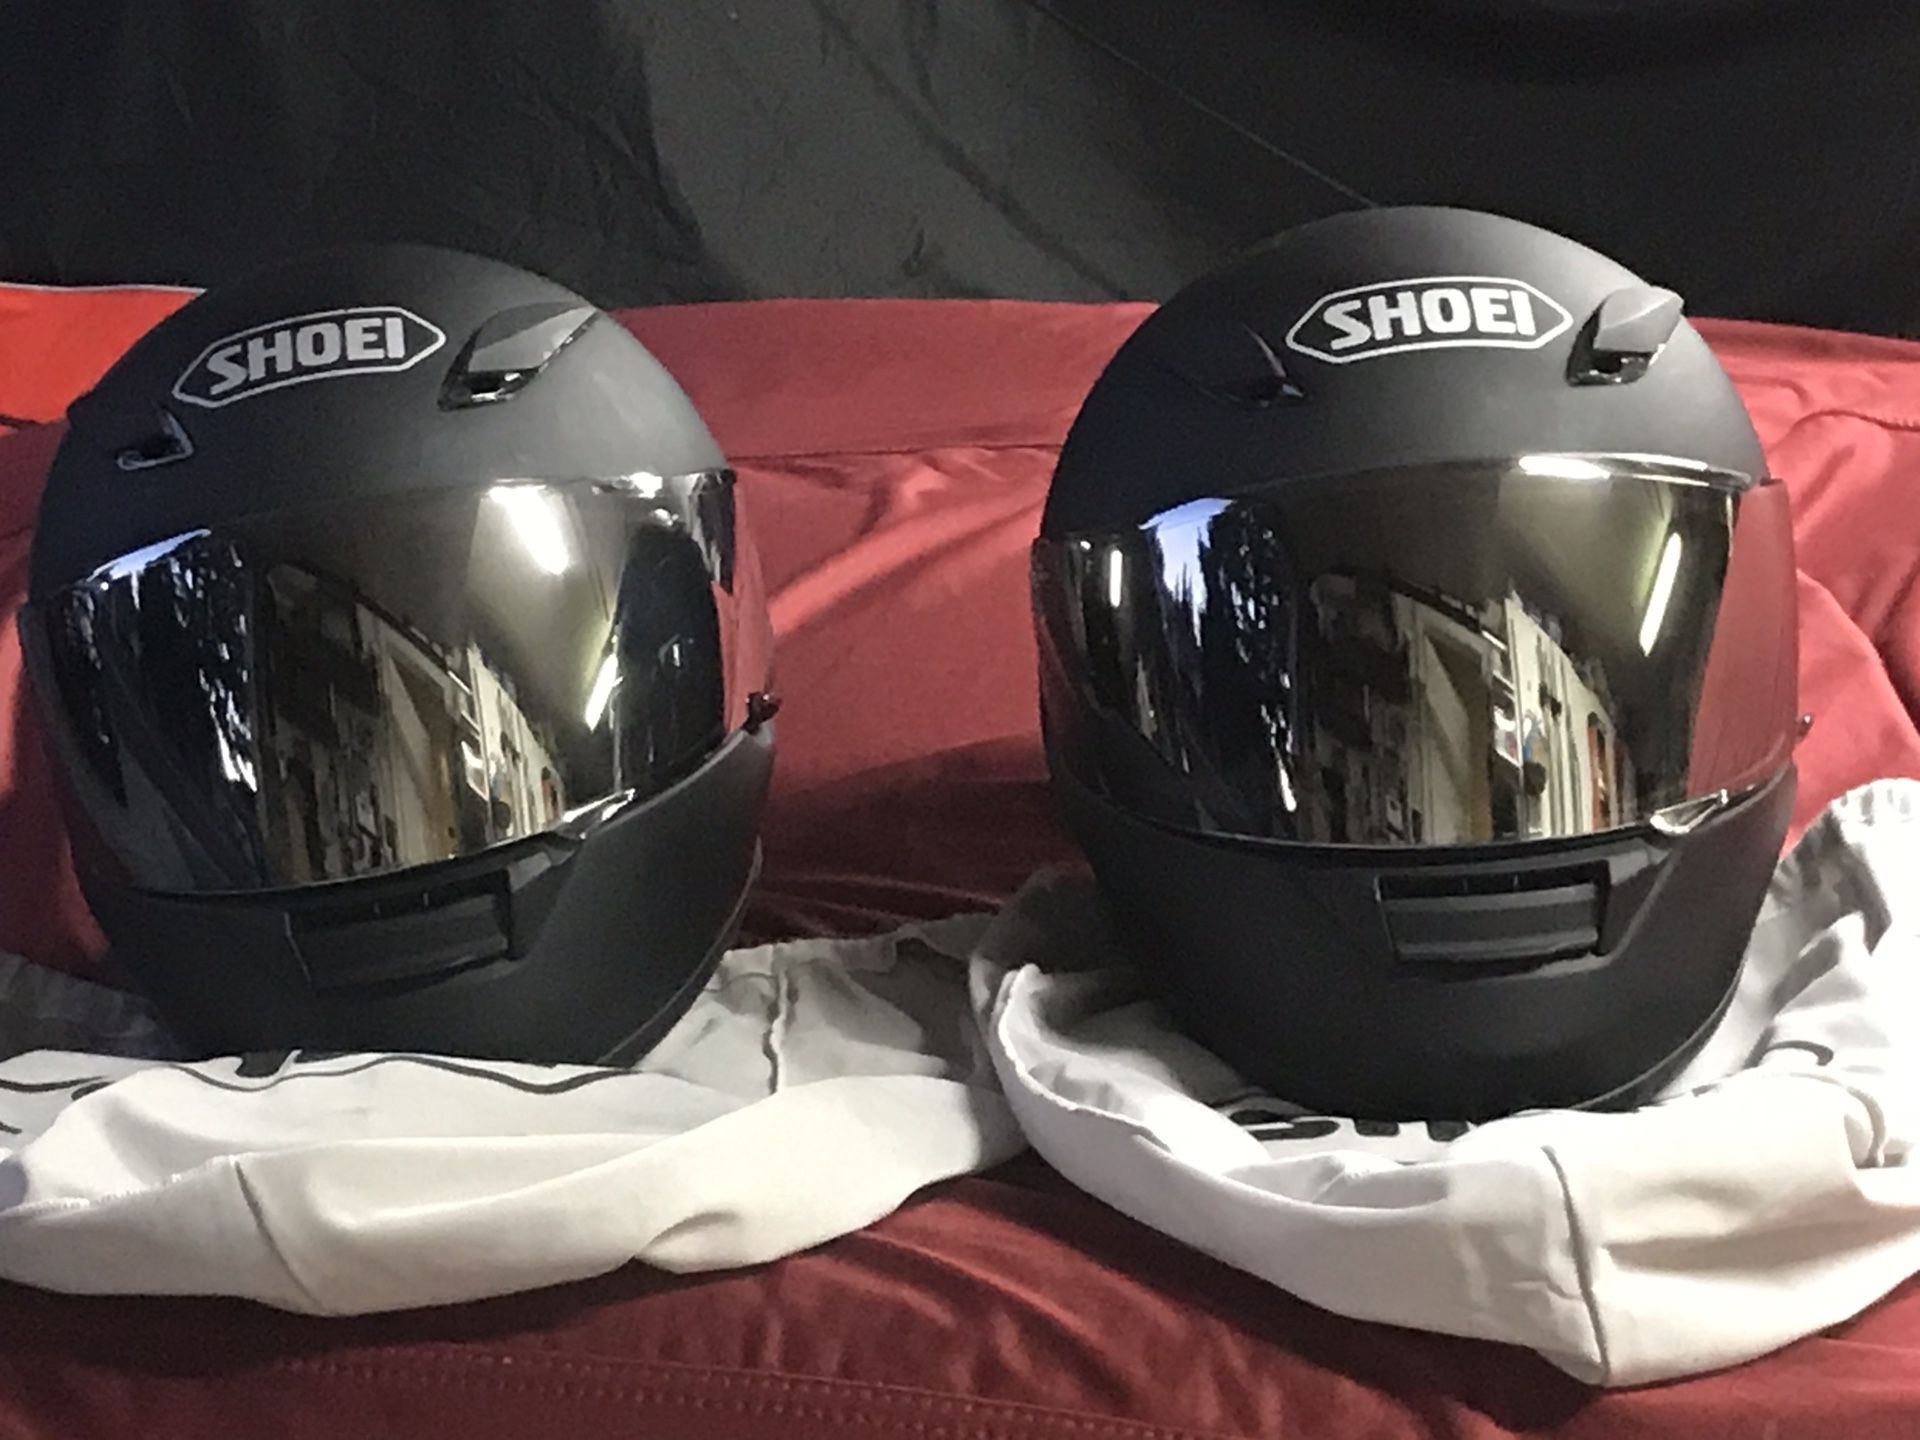 Pair of Shoei RF1100 Full Face Motorcycle Helmets